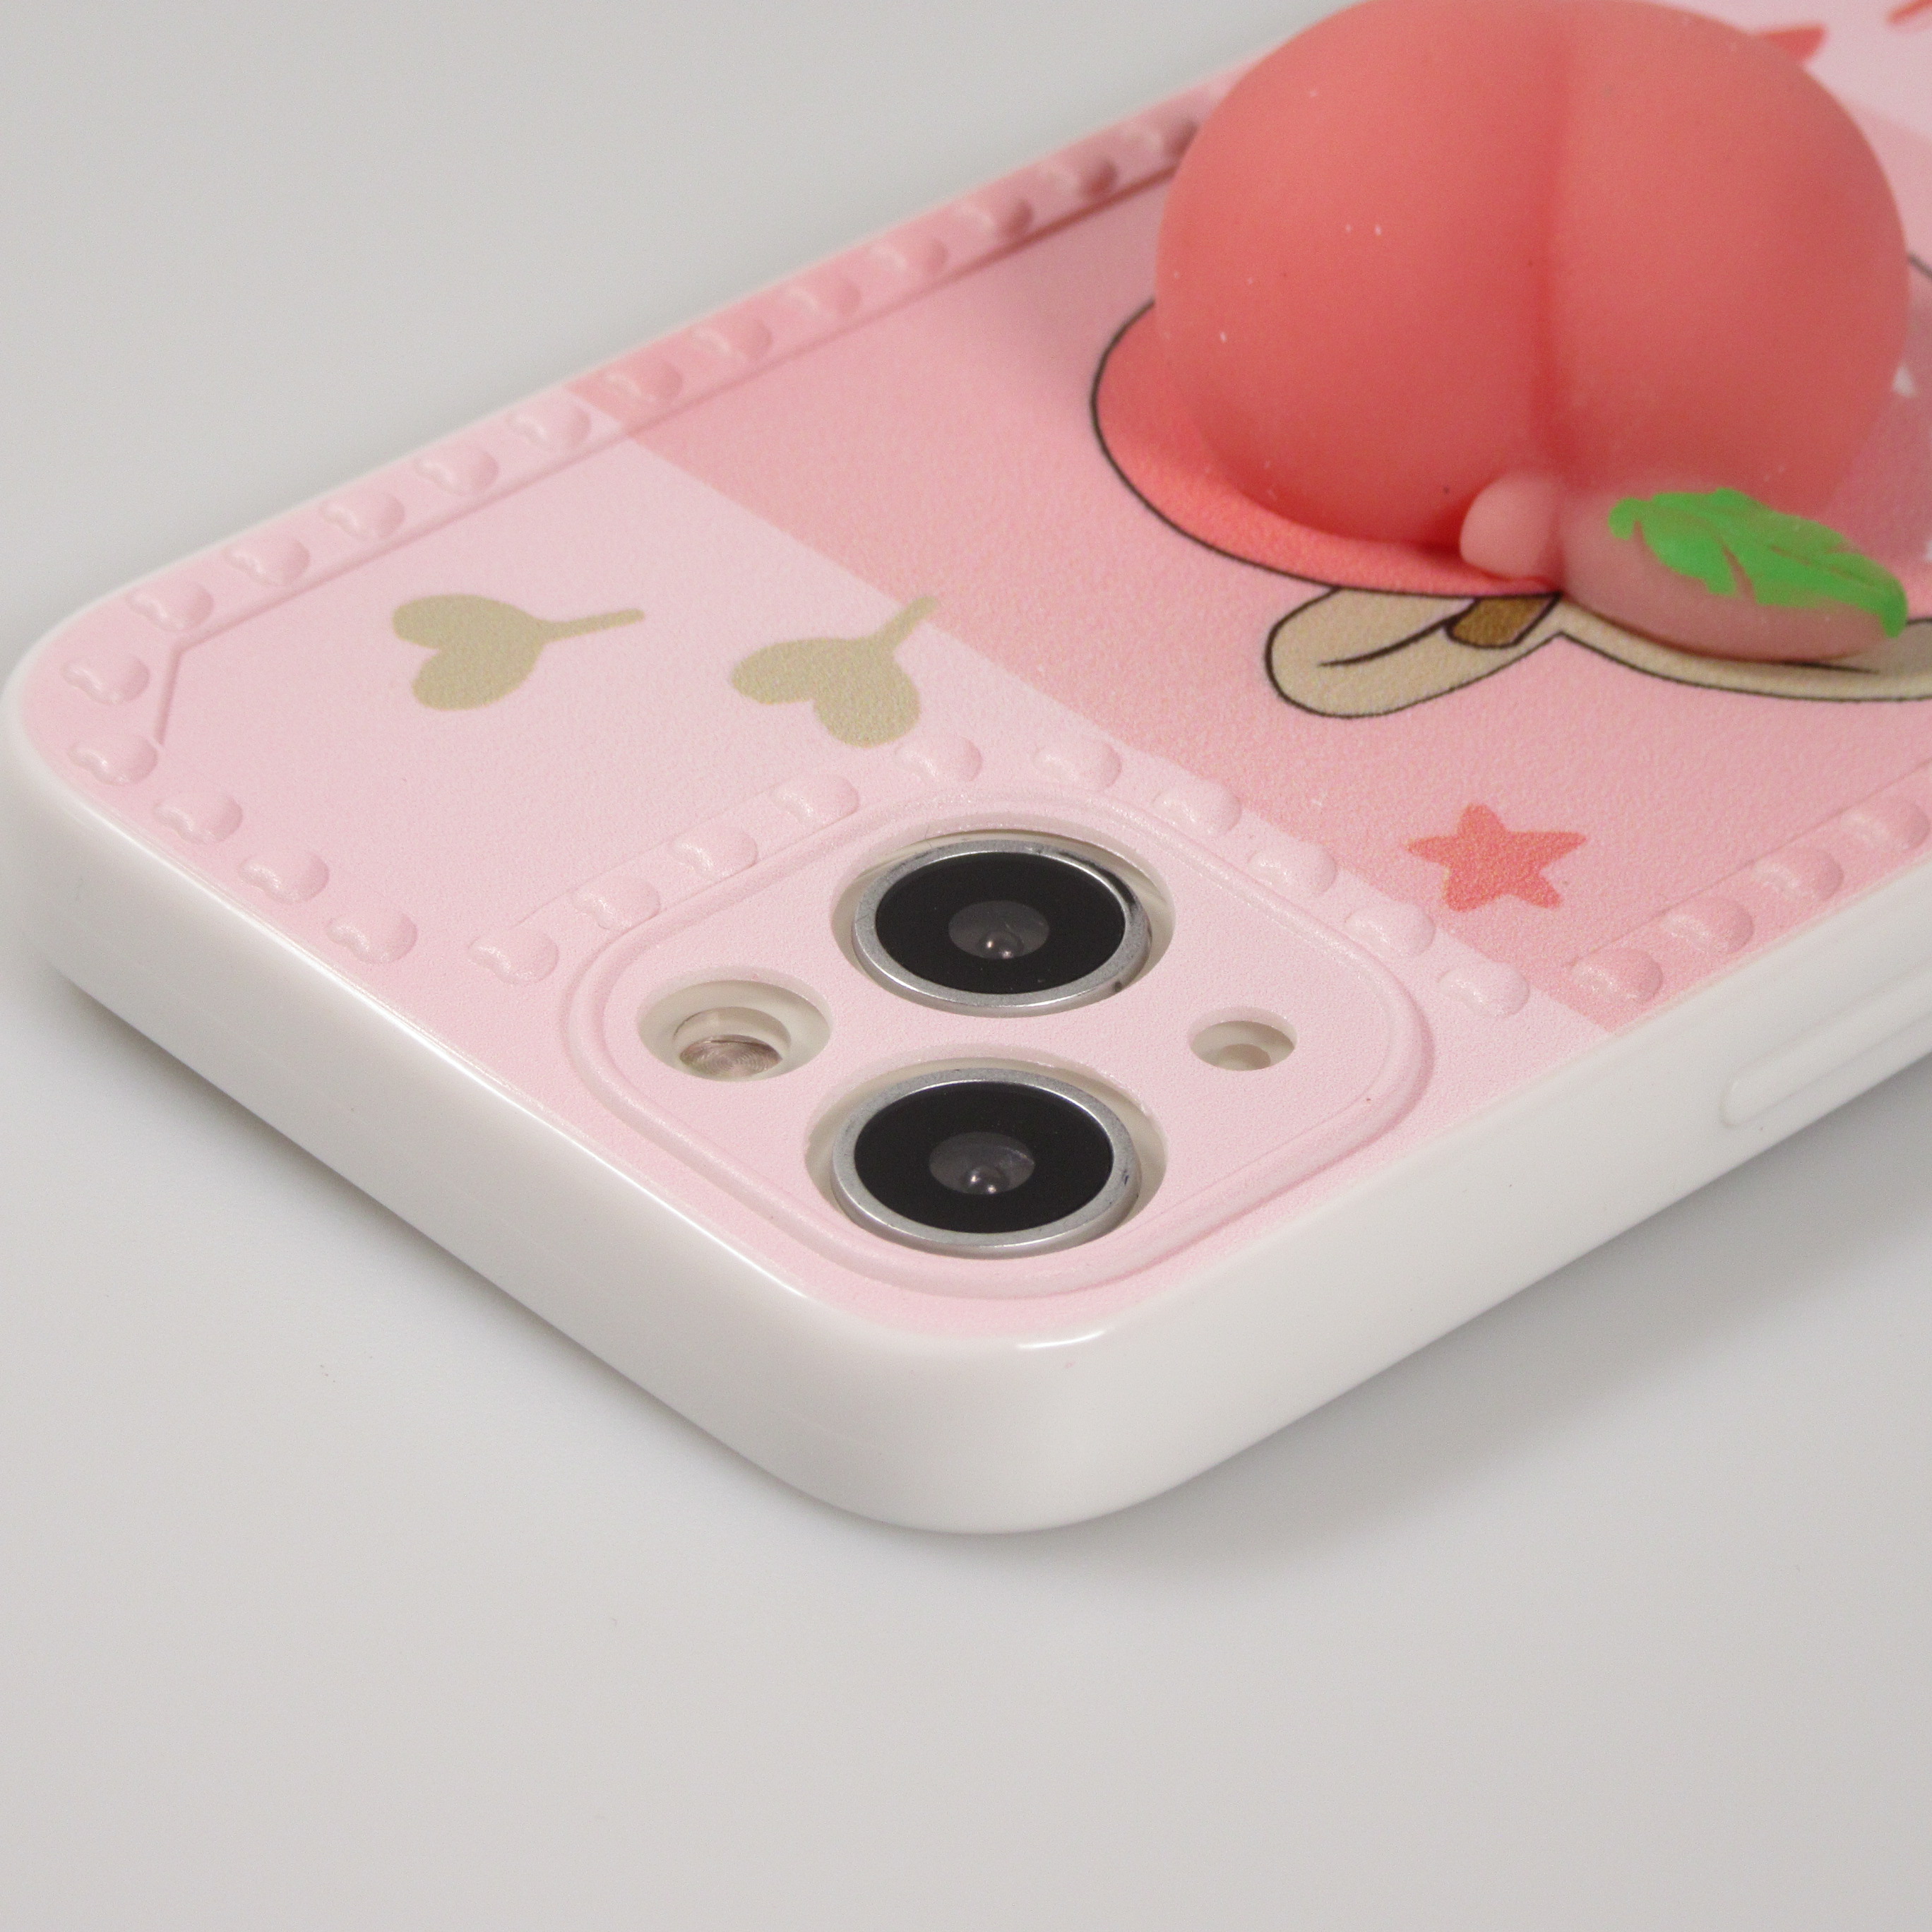 Coque rigide pour iPhone avec impression 3D - Puzzle violet et rose - Un  accessoire créatif et stimulant pour votre iPhone